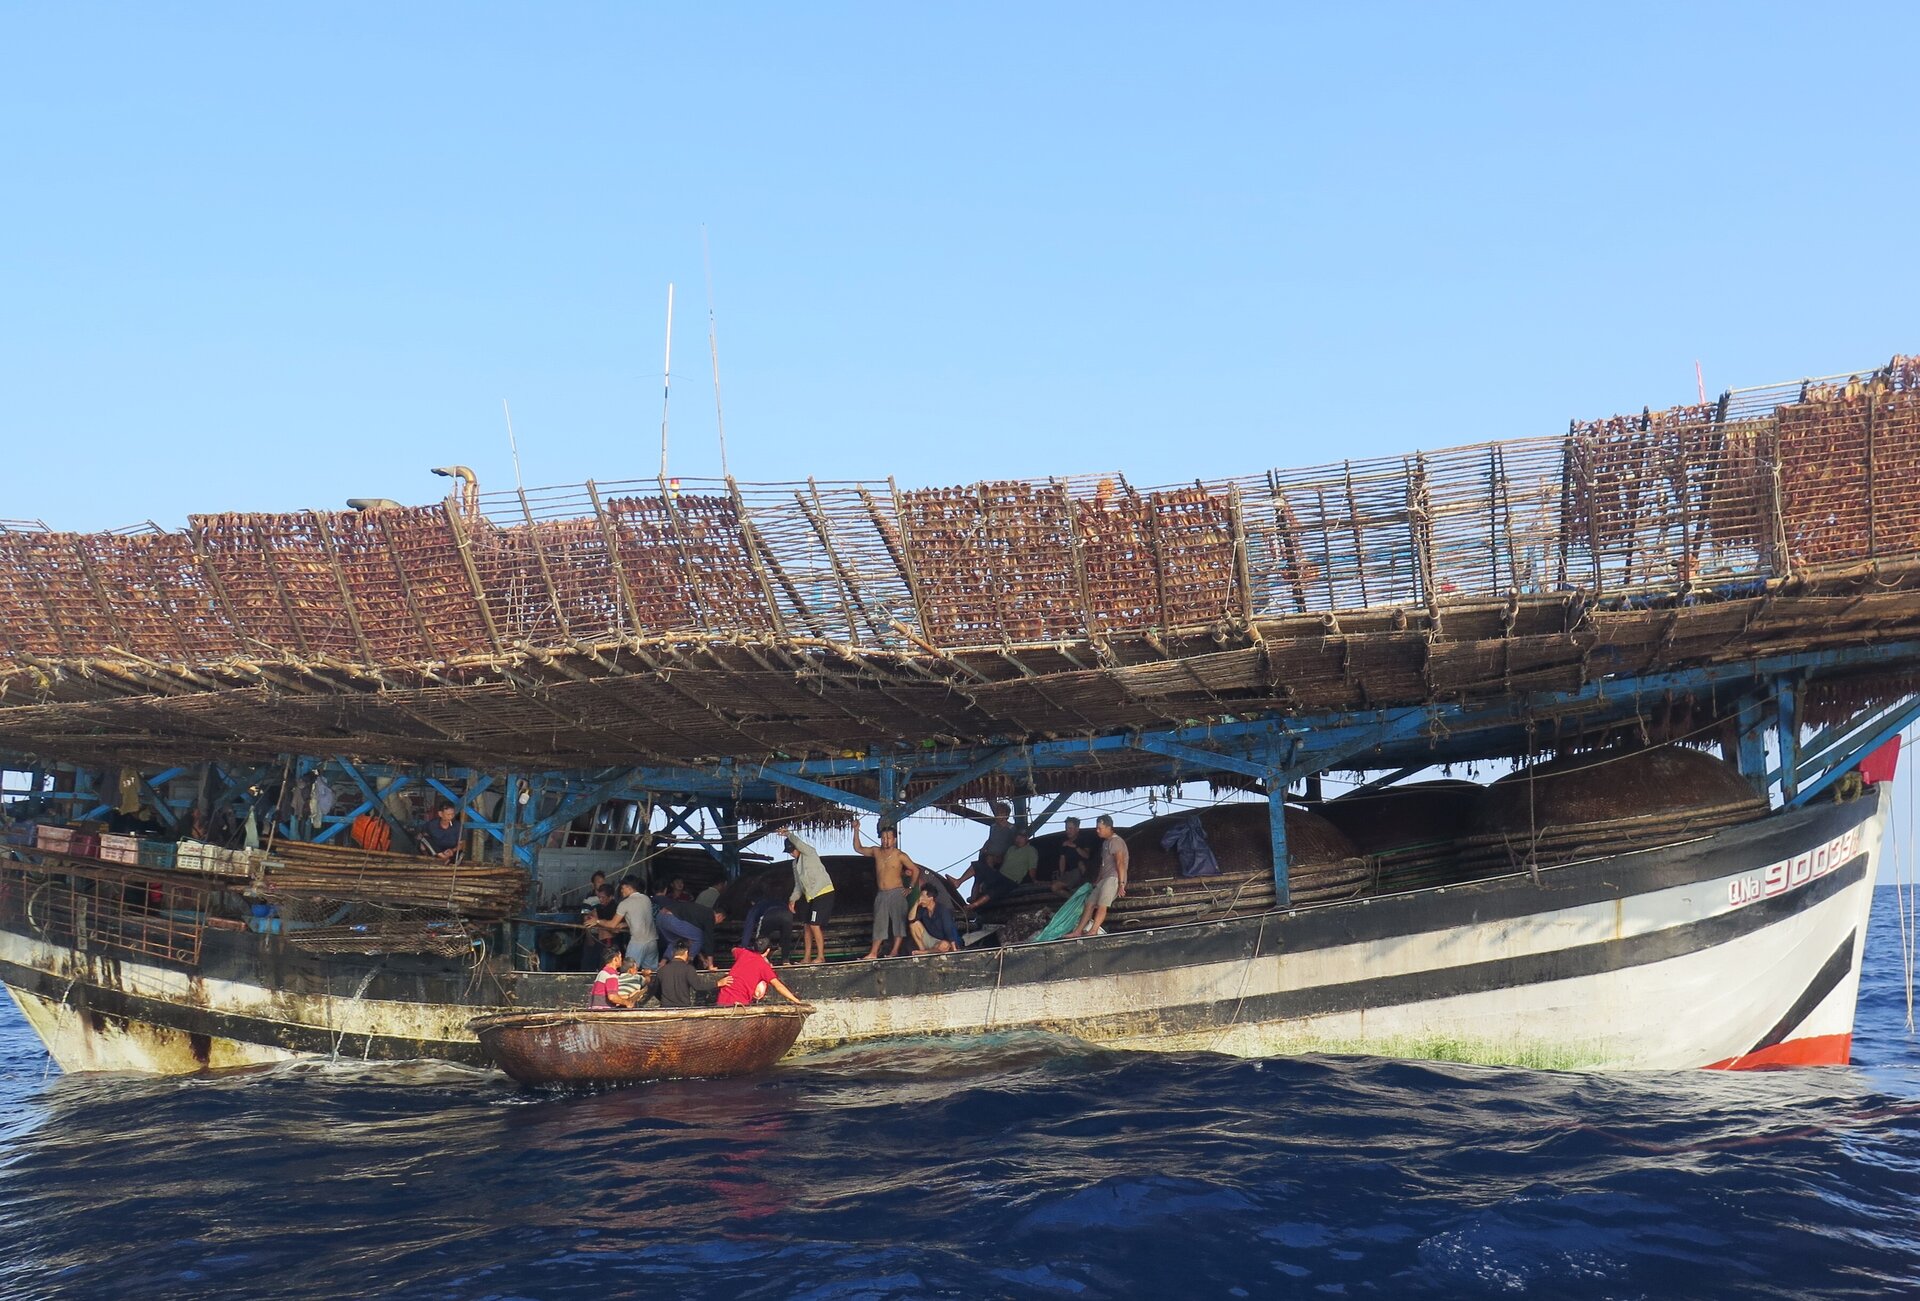 Toàn cảnh cứu hộ, đưa 80 ngư dân chìm tàu từ Trường Sa về đất liền - 2